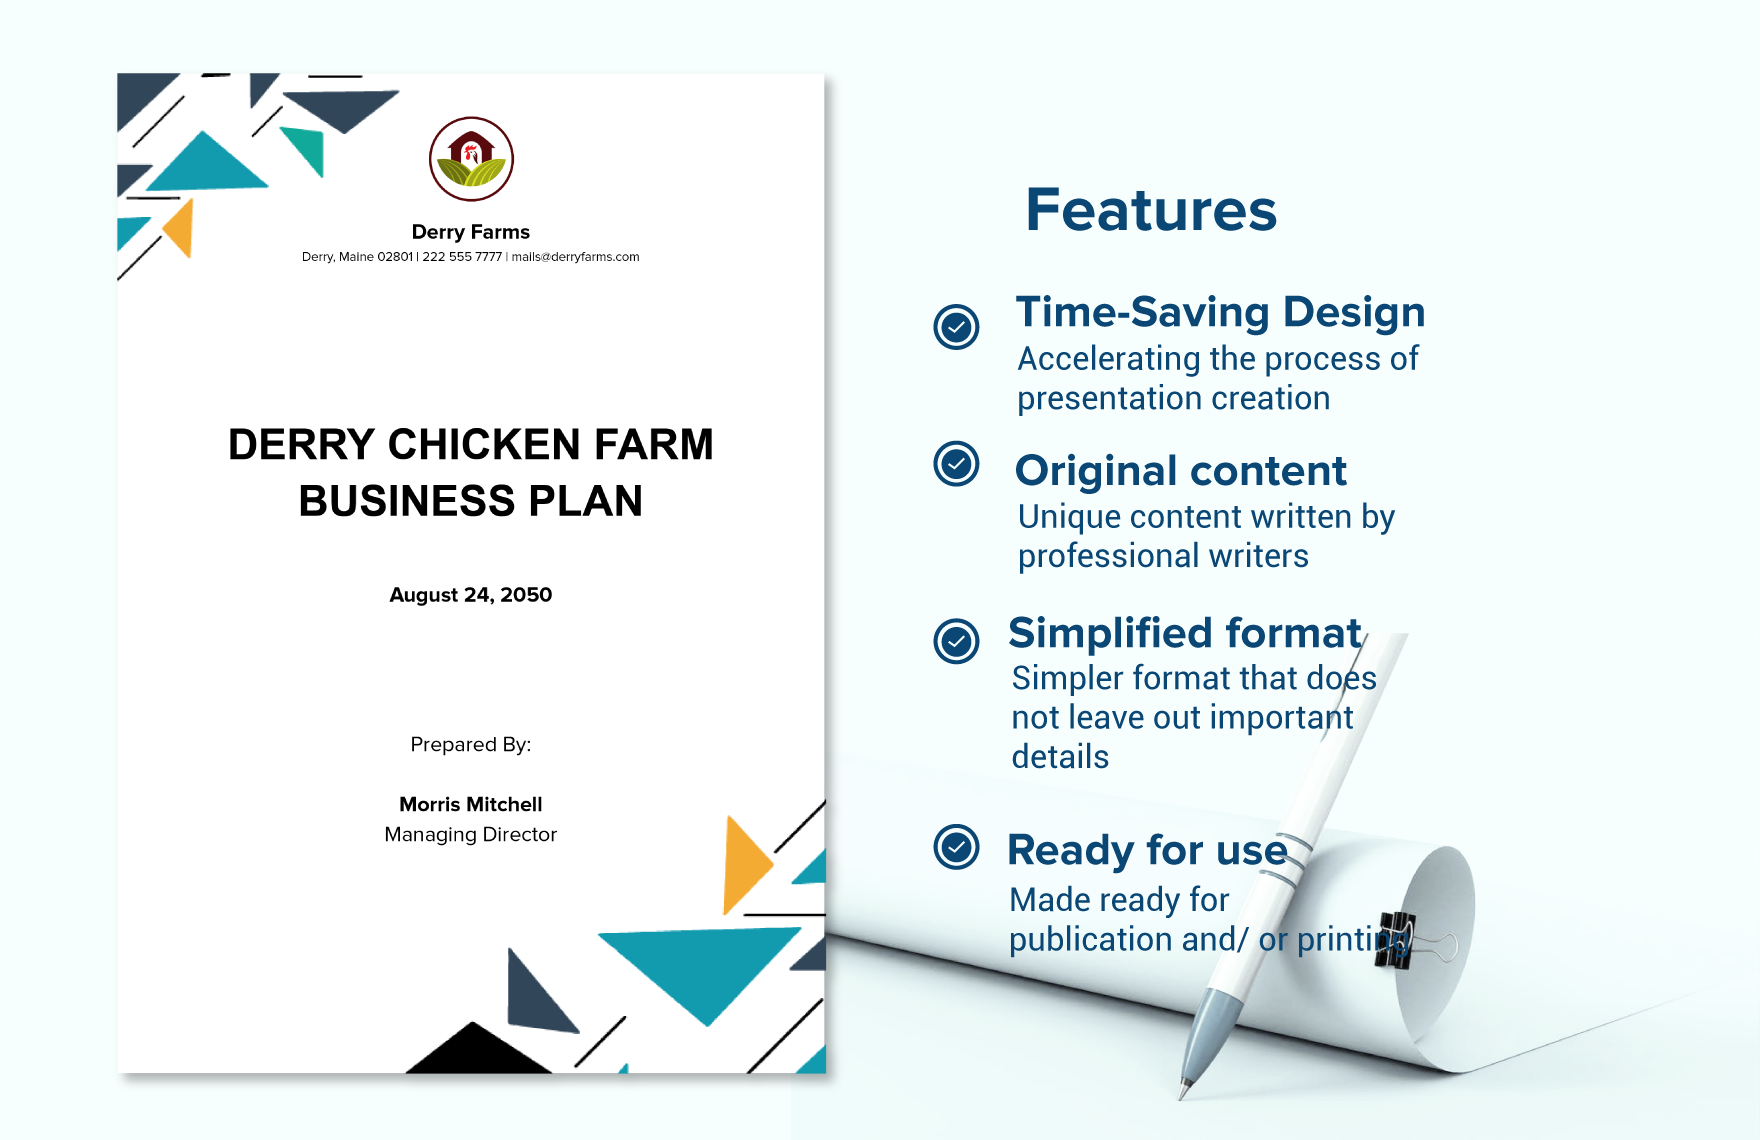 Chicken Farm Business Plan Template